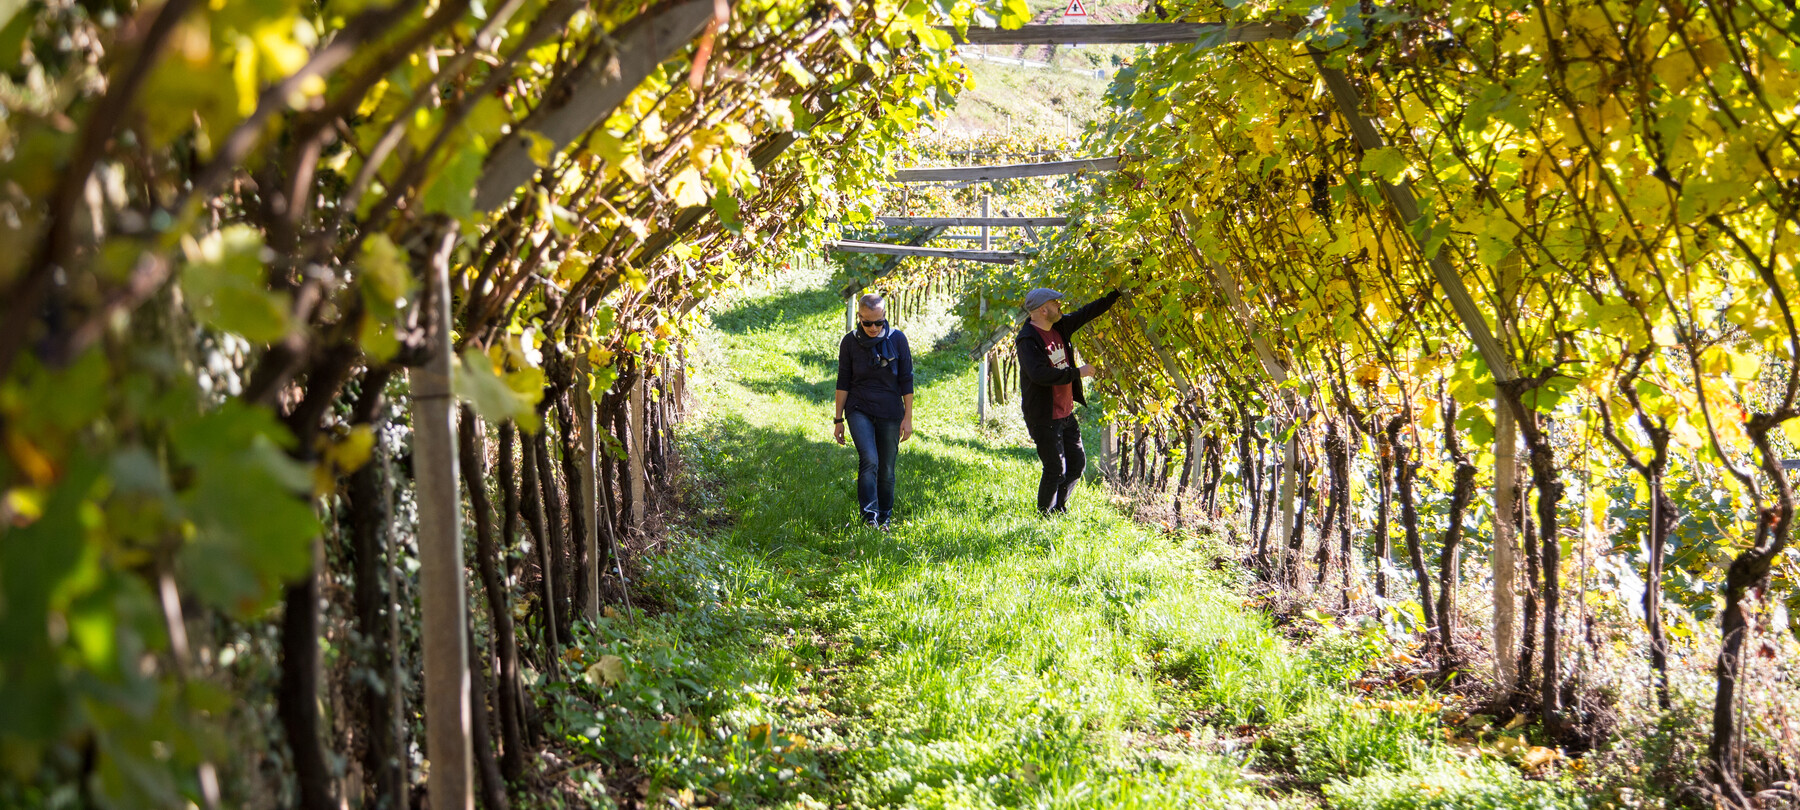 Growing resistant grapevine varieties in Trentino